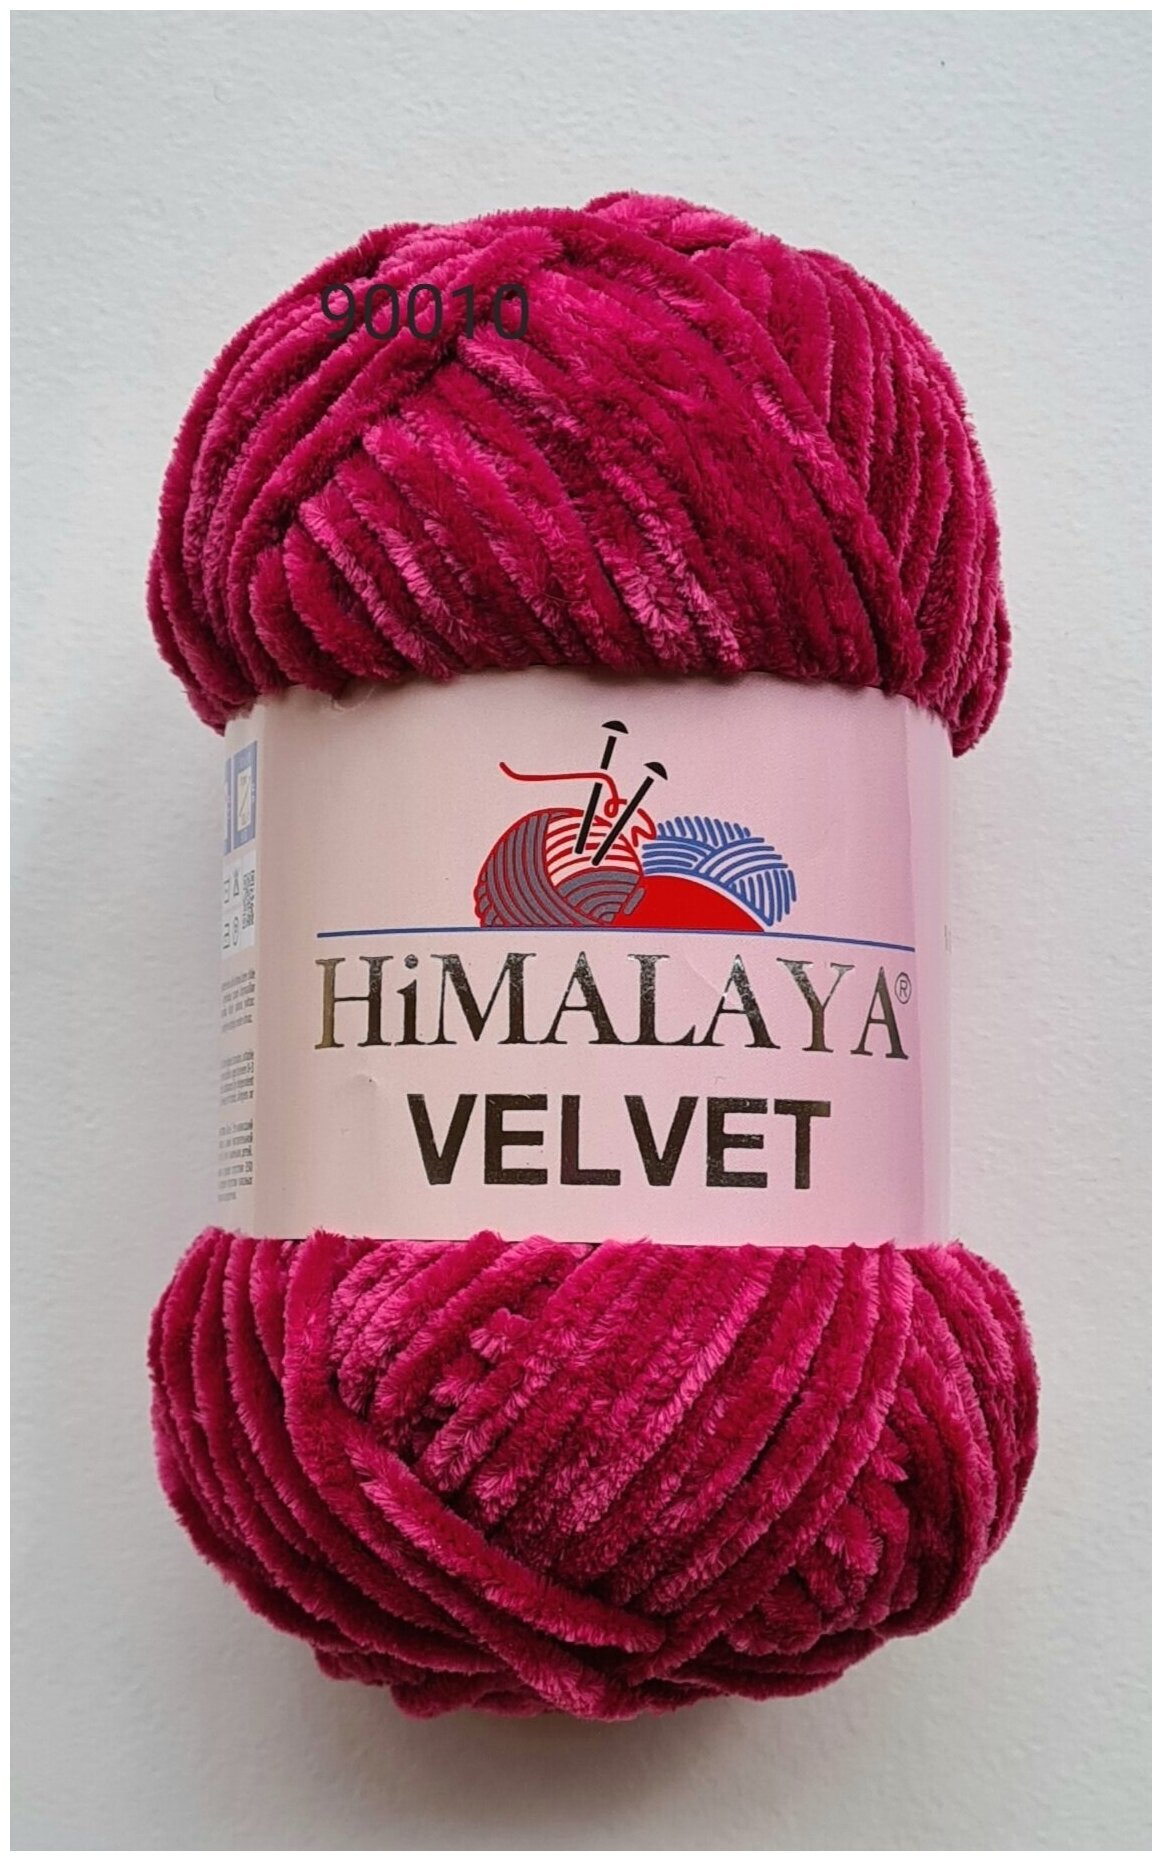 Пряжа плюшевая, велюровая Himalaya Velvet (Хималая вельвет) 100г/120м, 100% микрополиэстер, цвет: 90010 малина (бордовый), 1 моток